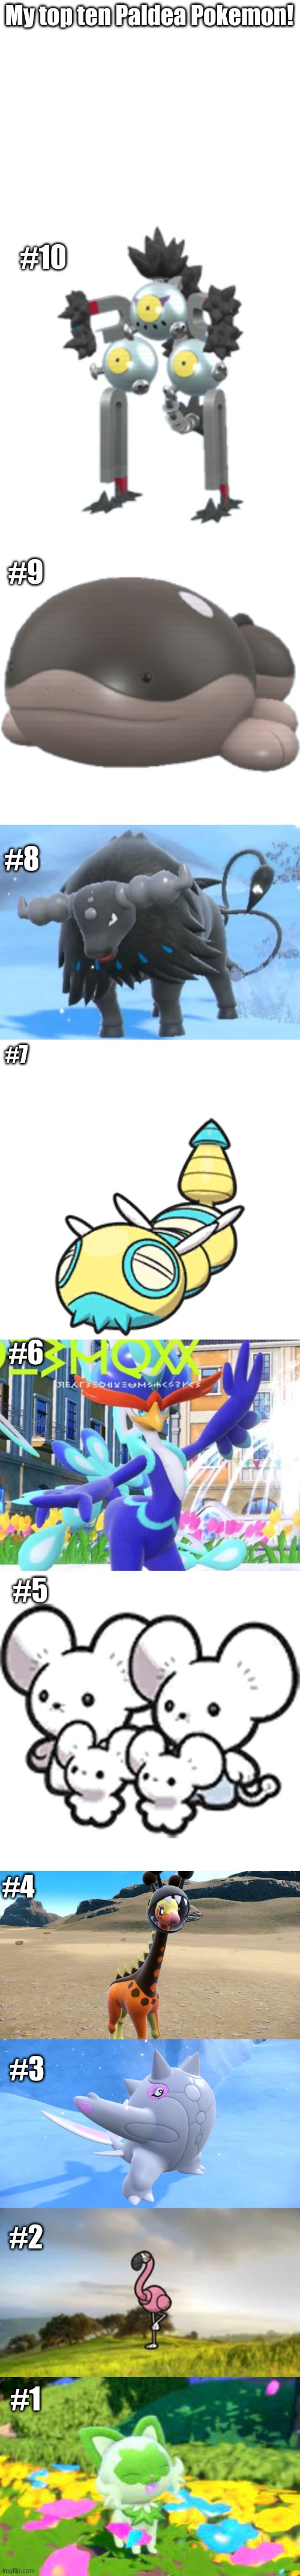 My top 10 Paldea Pokemon | My top ten Paldea Pokemon! #10; #9; #8; #7; #6; #5; #4; #3; #2; #1 | image tagged in paldea region,top 10,pokemon | made w/ Imgflip meme maker